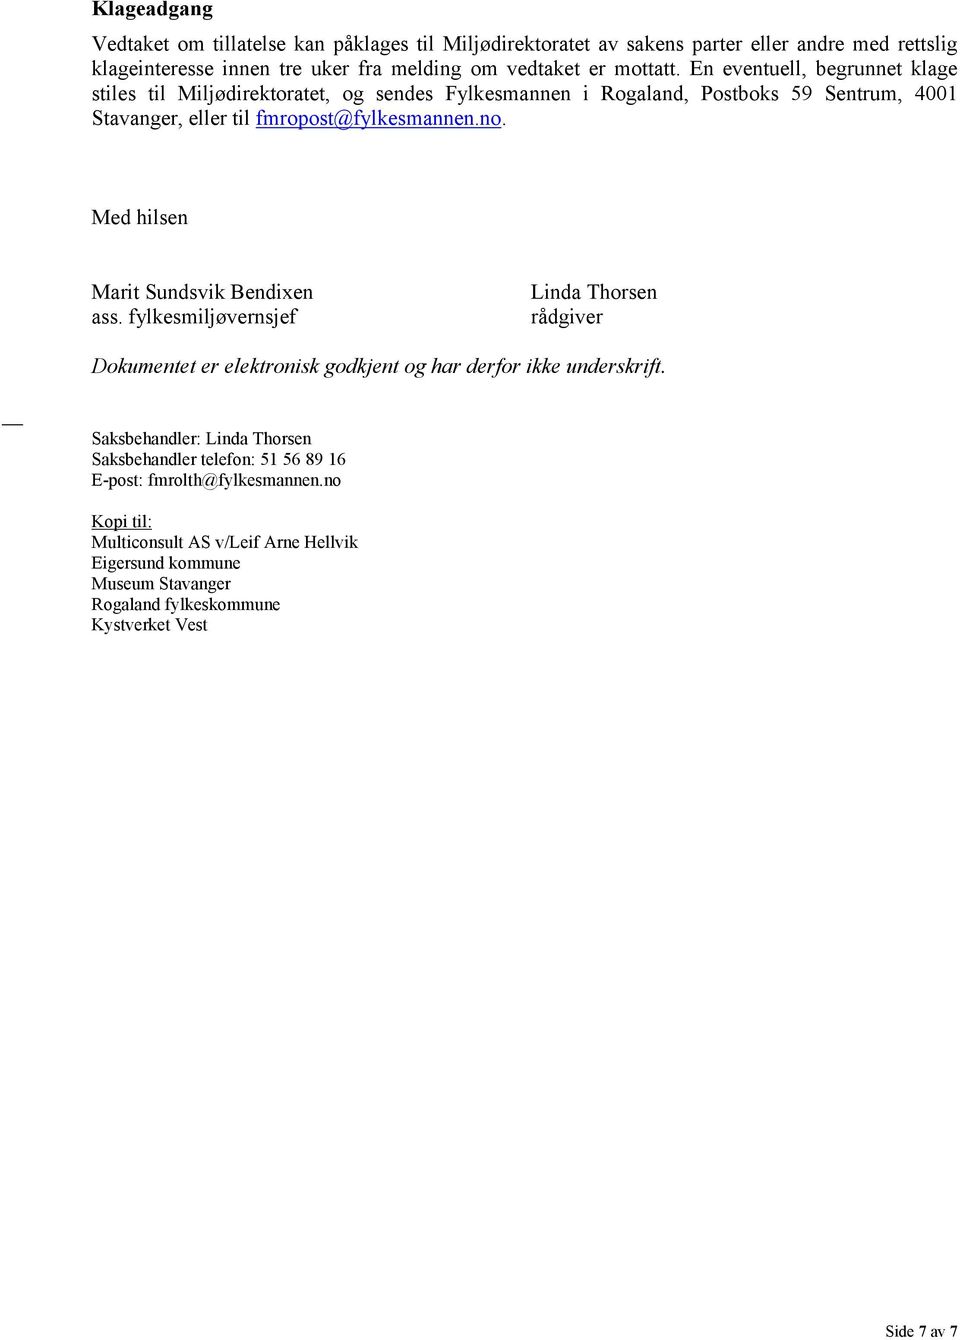 Med hilsen Marit Sundsvik Bendixen ass. fylkesmiljøvernsjef Linda Thorsen rådgiver Dokumentet er elektronisk godkjent og har derfor ikke underskrift.